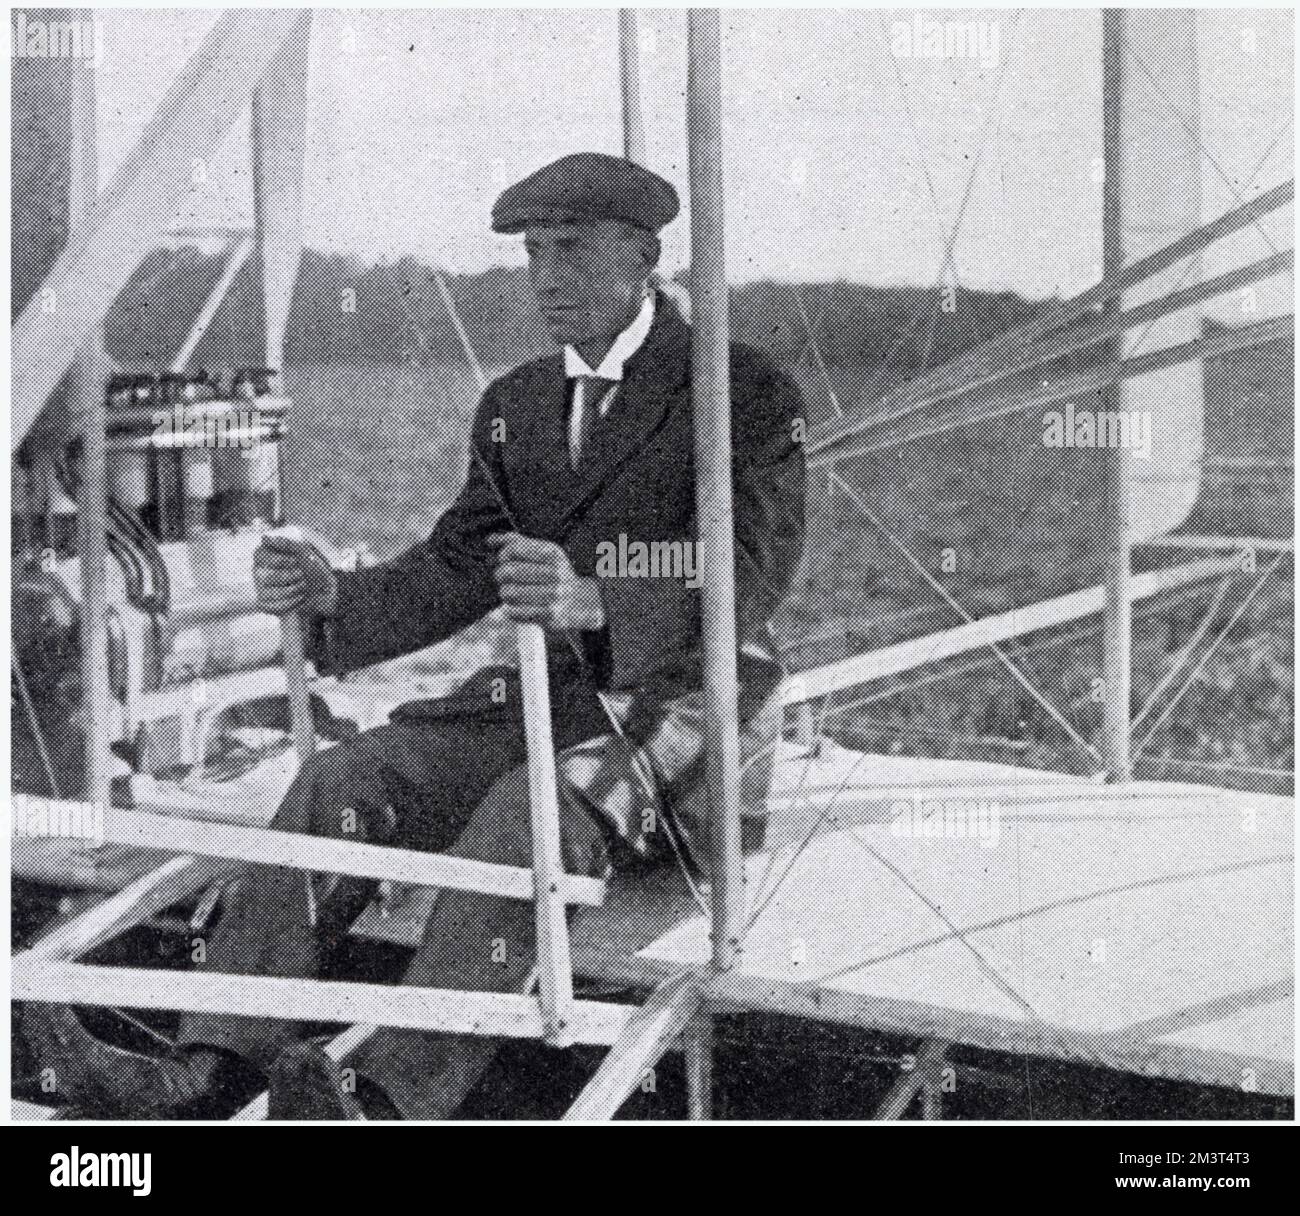 Wilbur Wright (1867 - 1912), amerikanischer Luftfahrtpionier, Erfinder des ersten erfolgreichen motorbetriebenen Flugzeugs. Foto von Wright kurz vor einem Flug, in Le Mans bei Paris. Datum: August 1908 Stockfoto